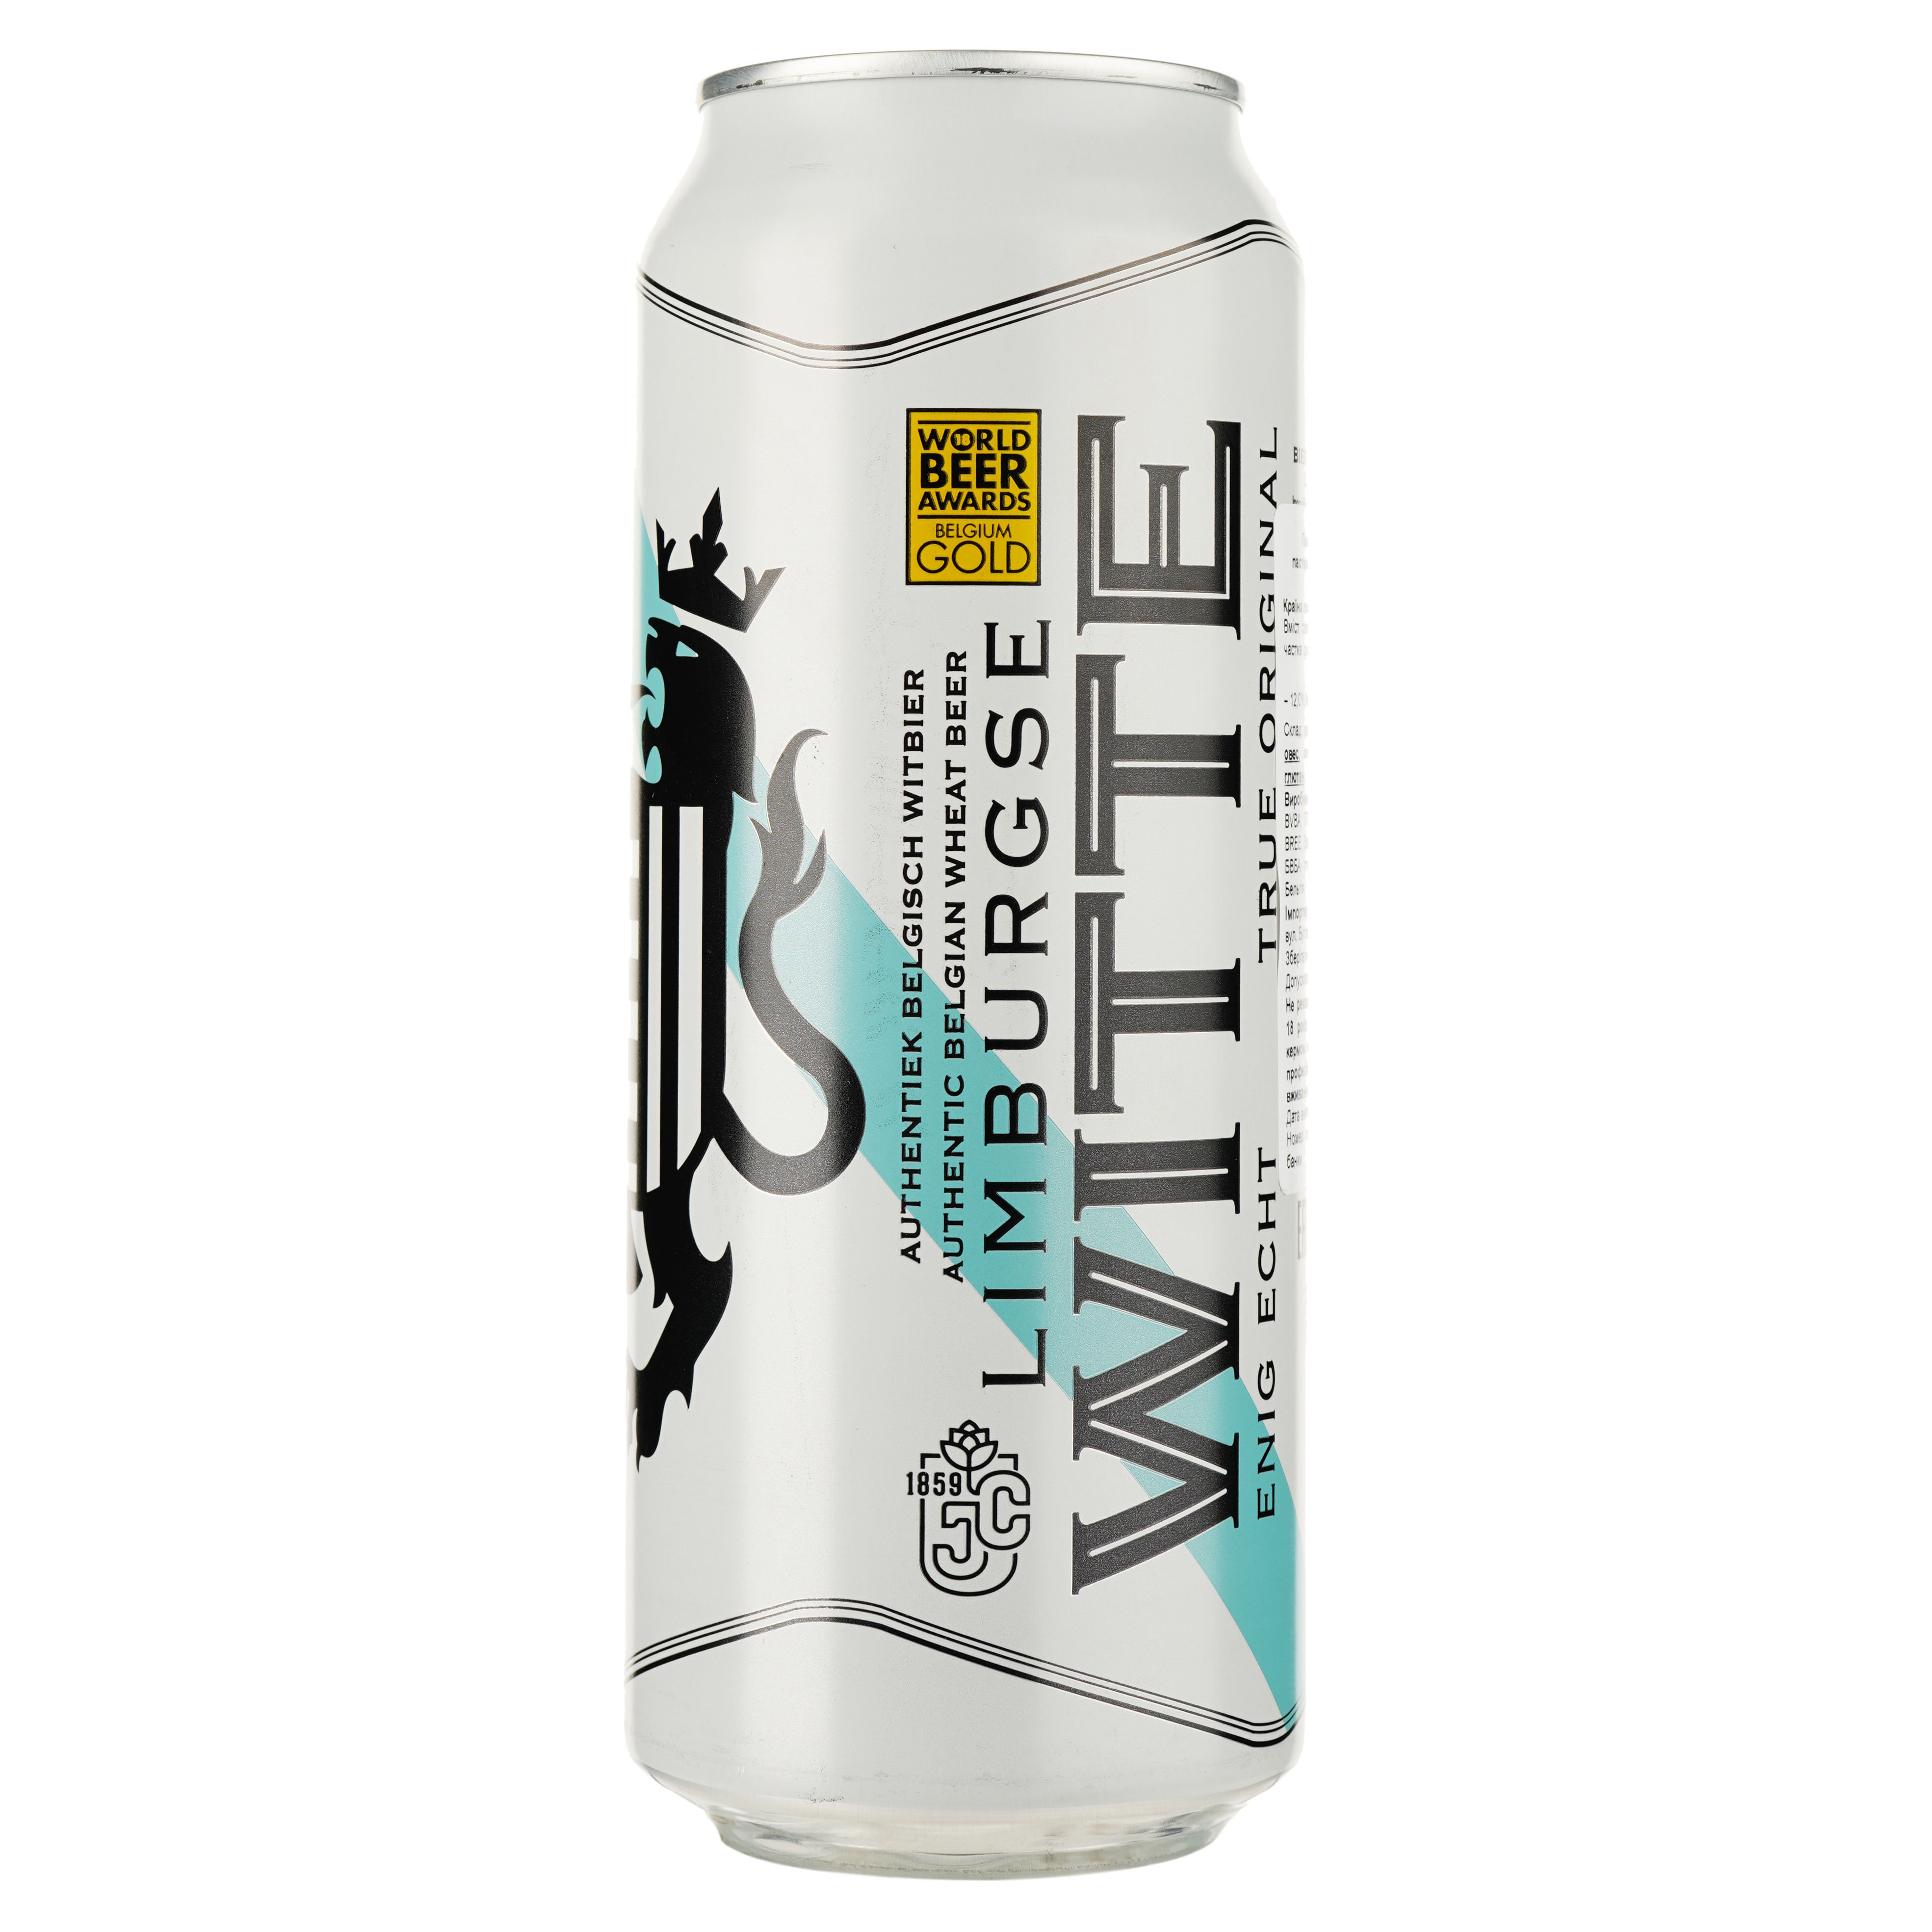 Пиво Limburgse Witte светлое 5% 0.5 л ж/б - фото 1